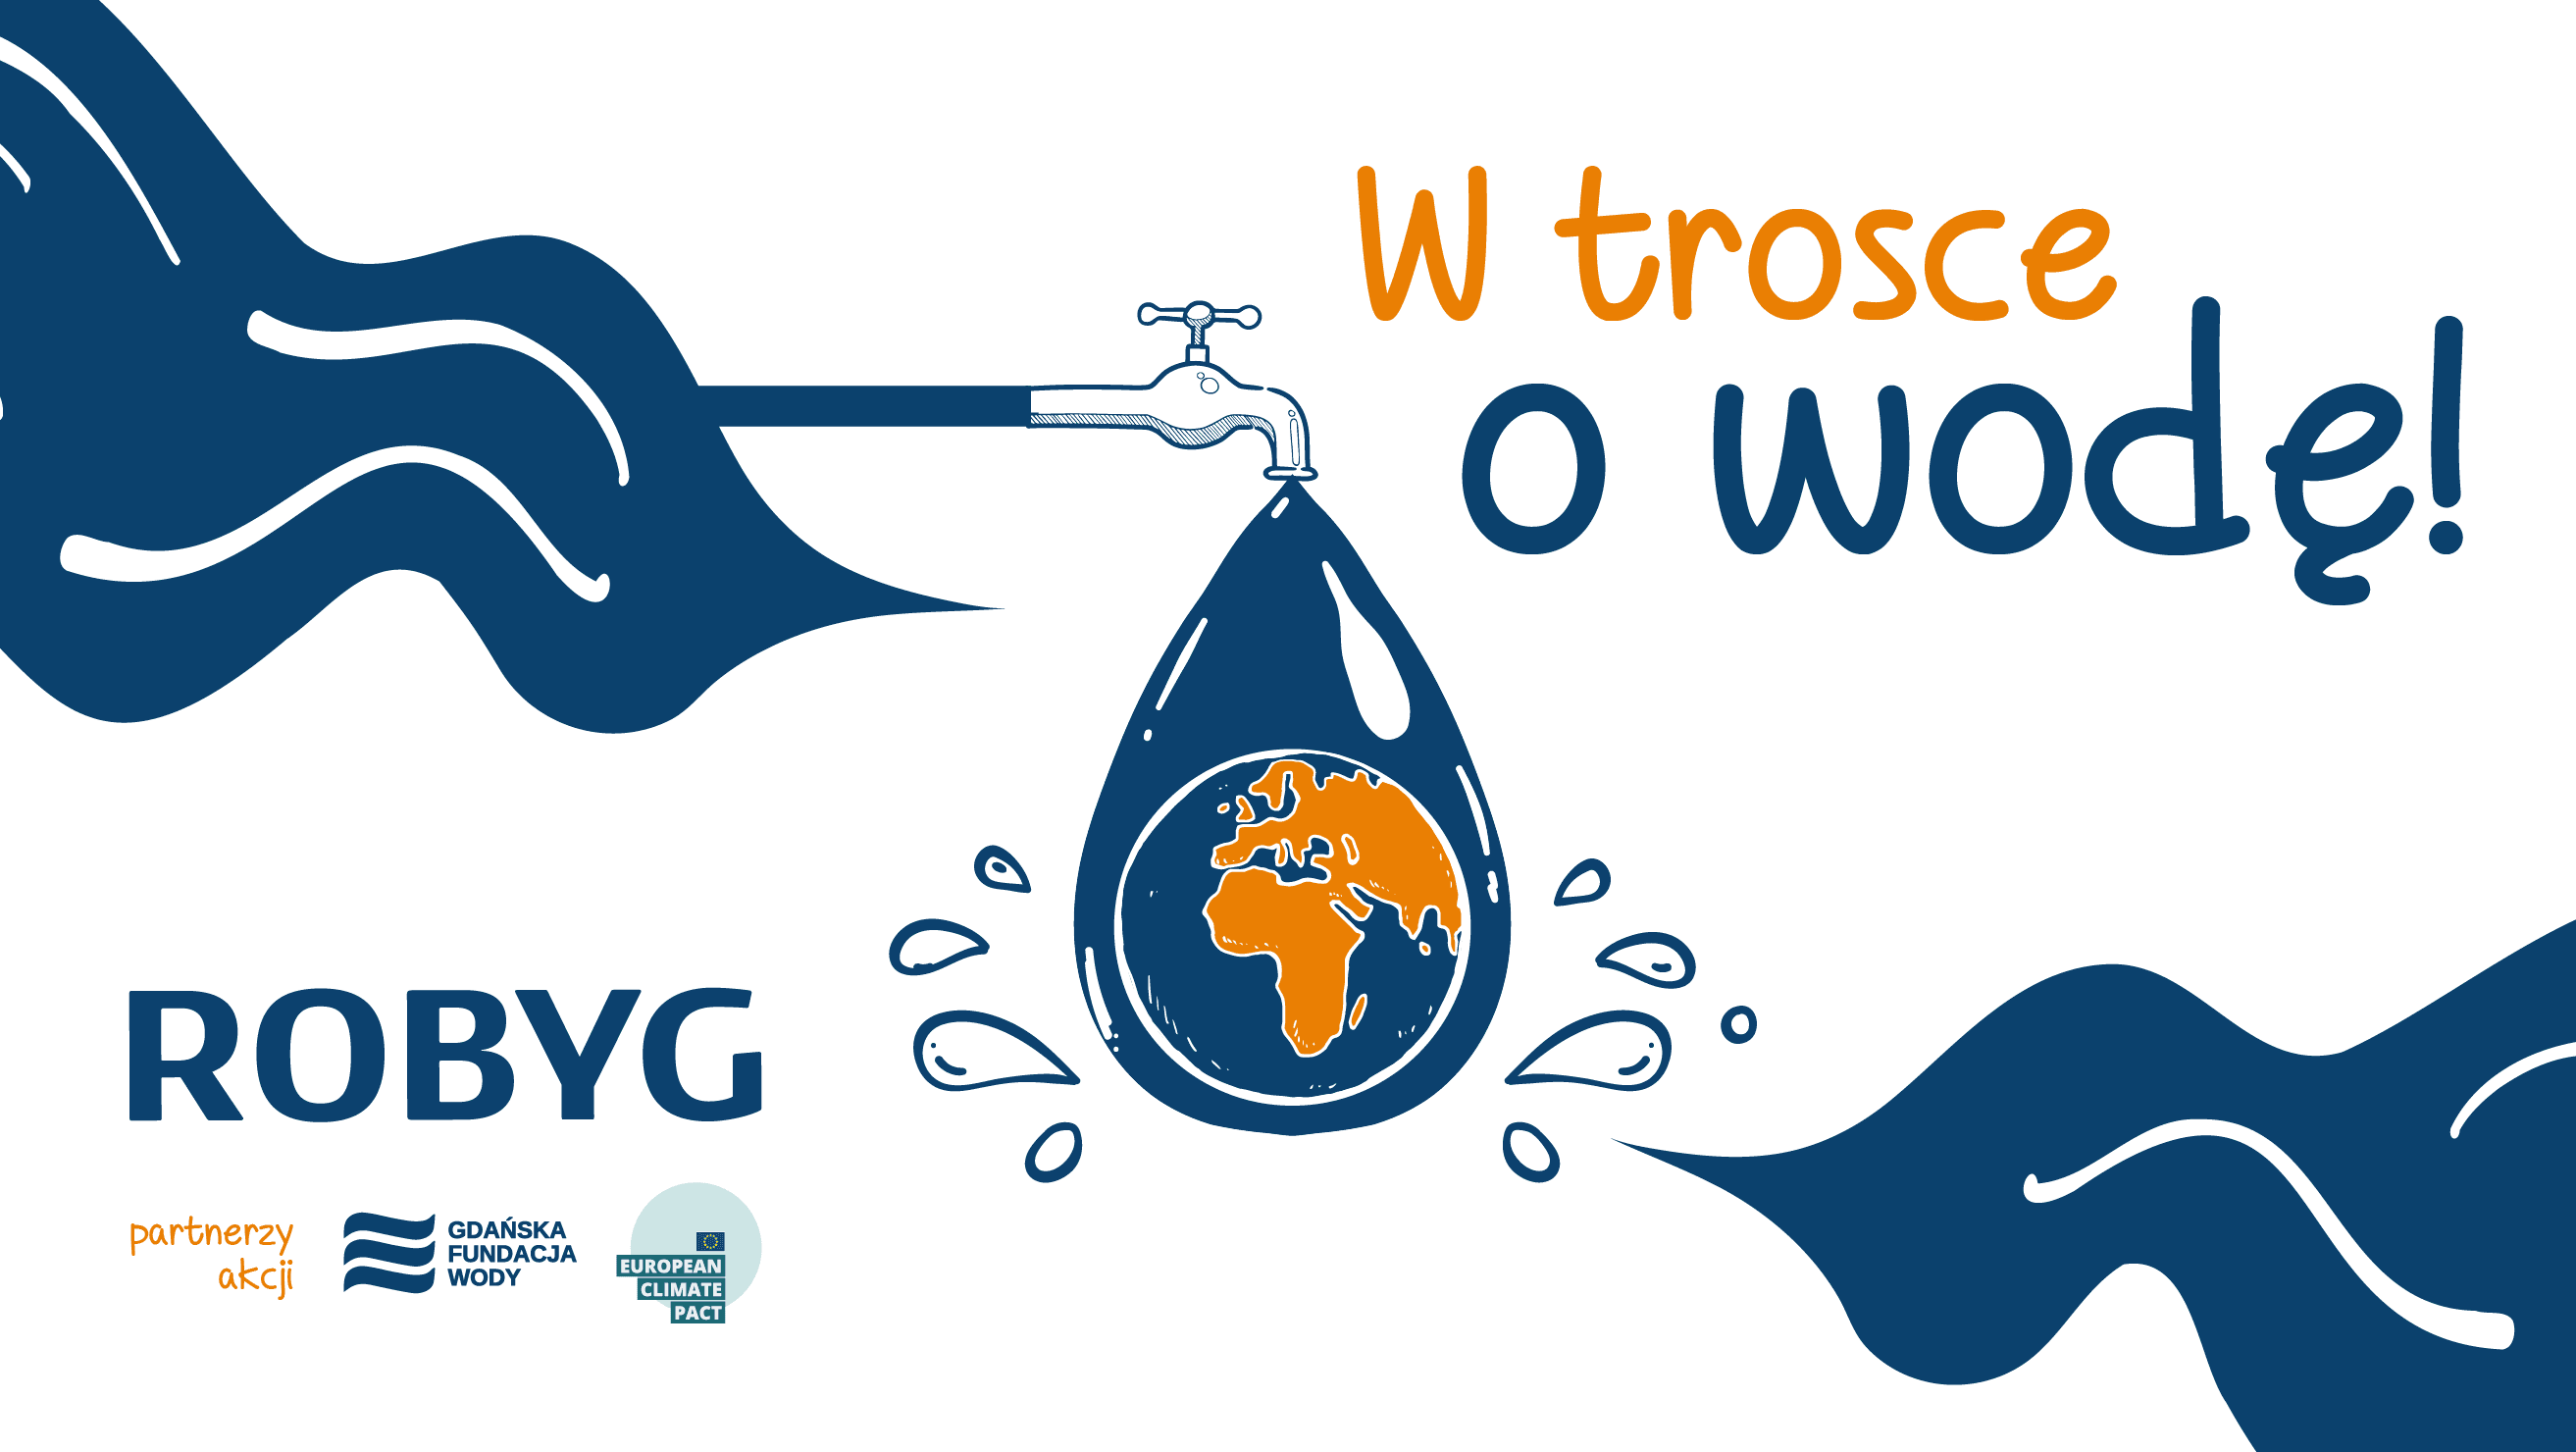 W trosce o wodę - kampania edukacyjna ROBYG